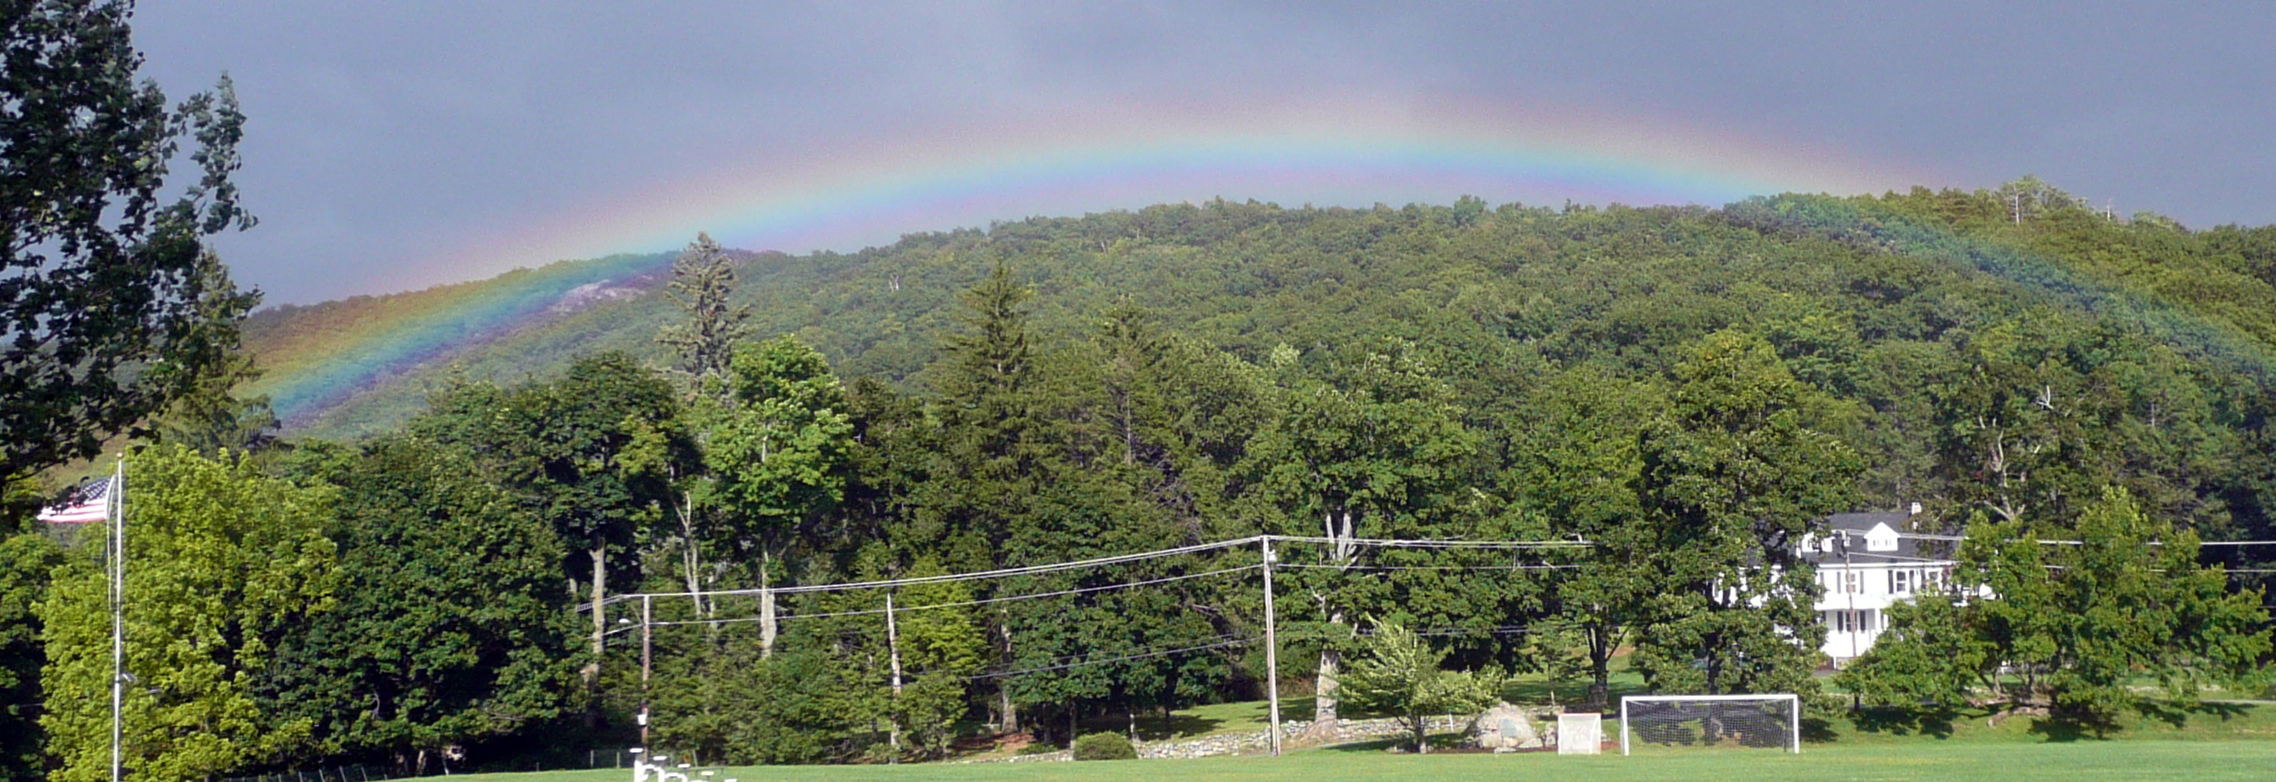 12-13 rainbow over Spy Rock